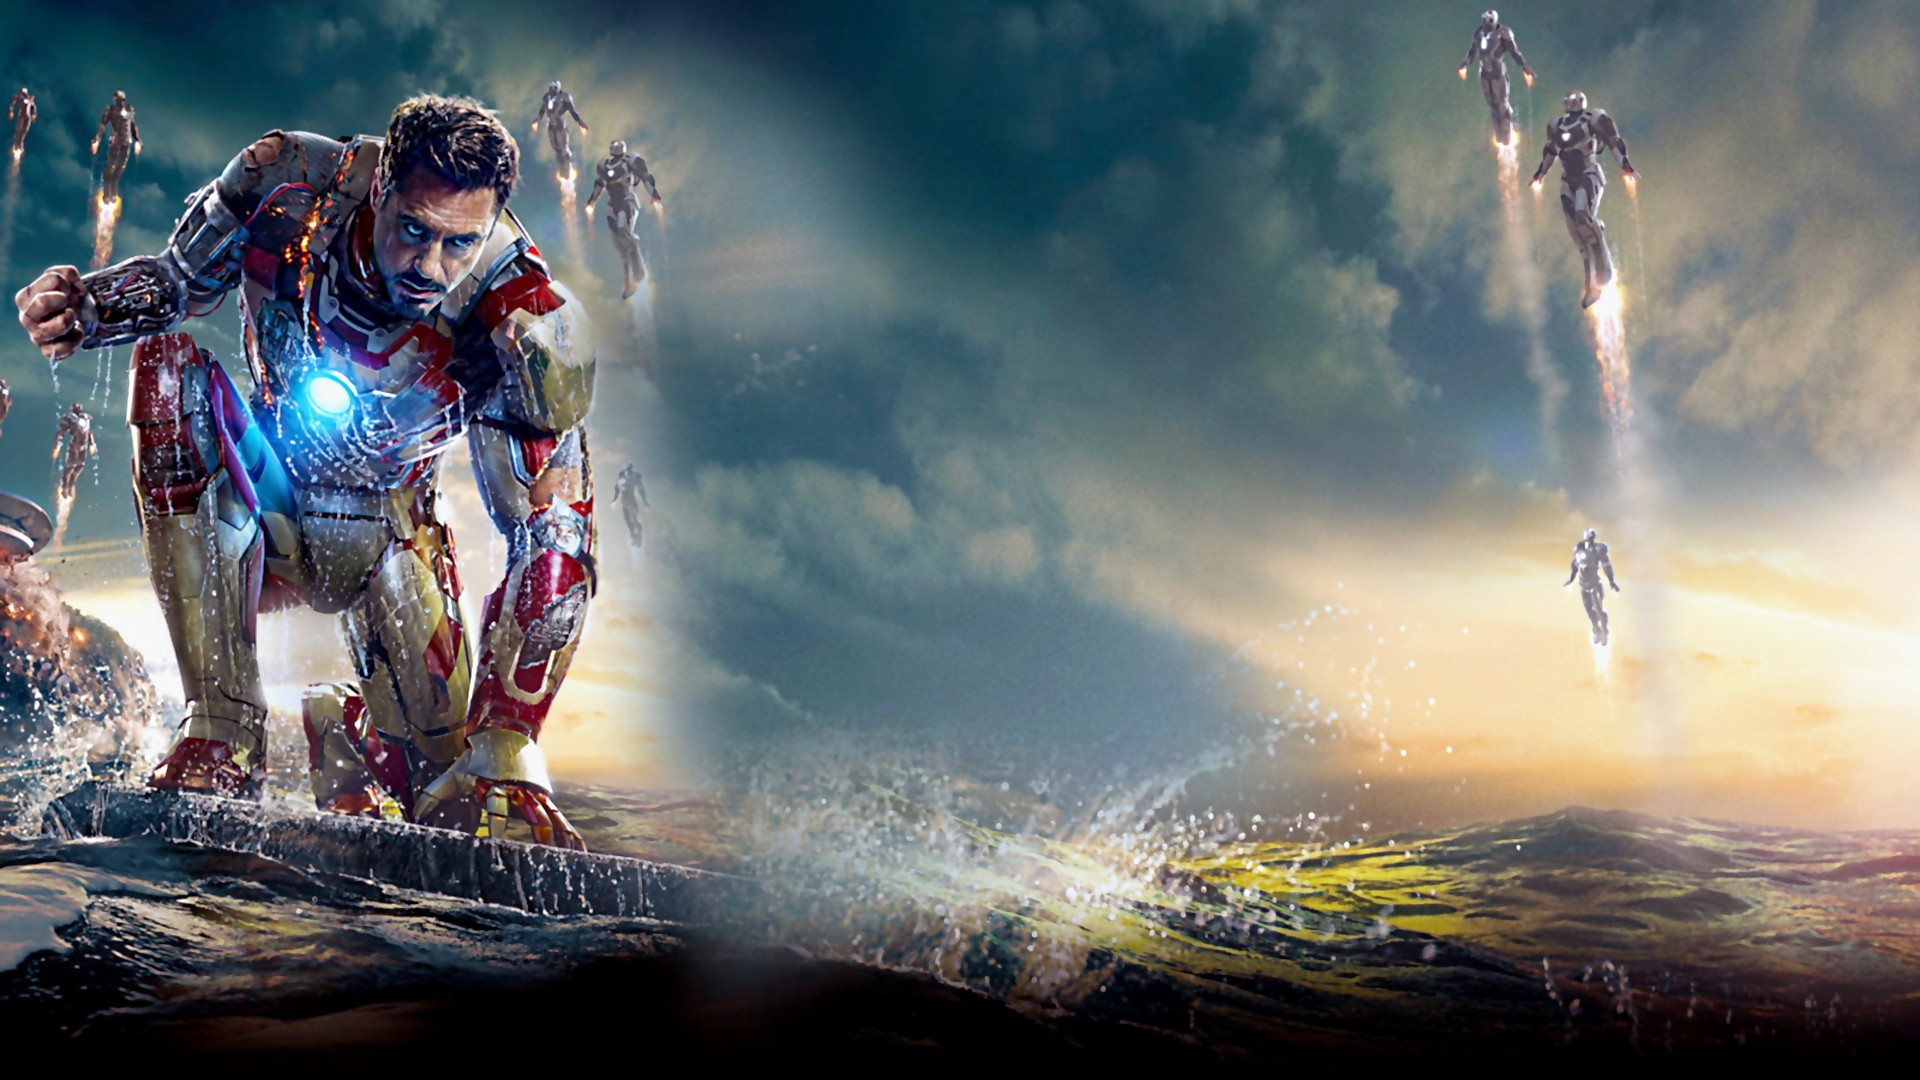 1920x1080 Robert Downey Jr - Iron Man 3